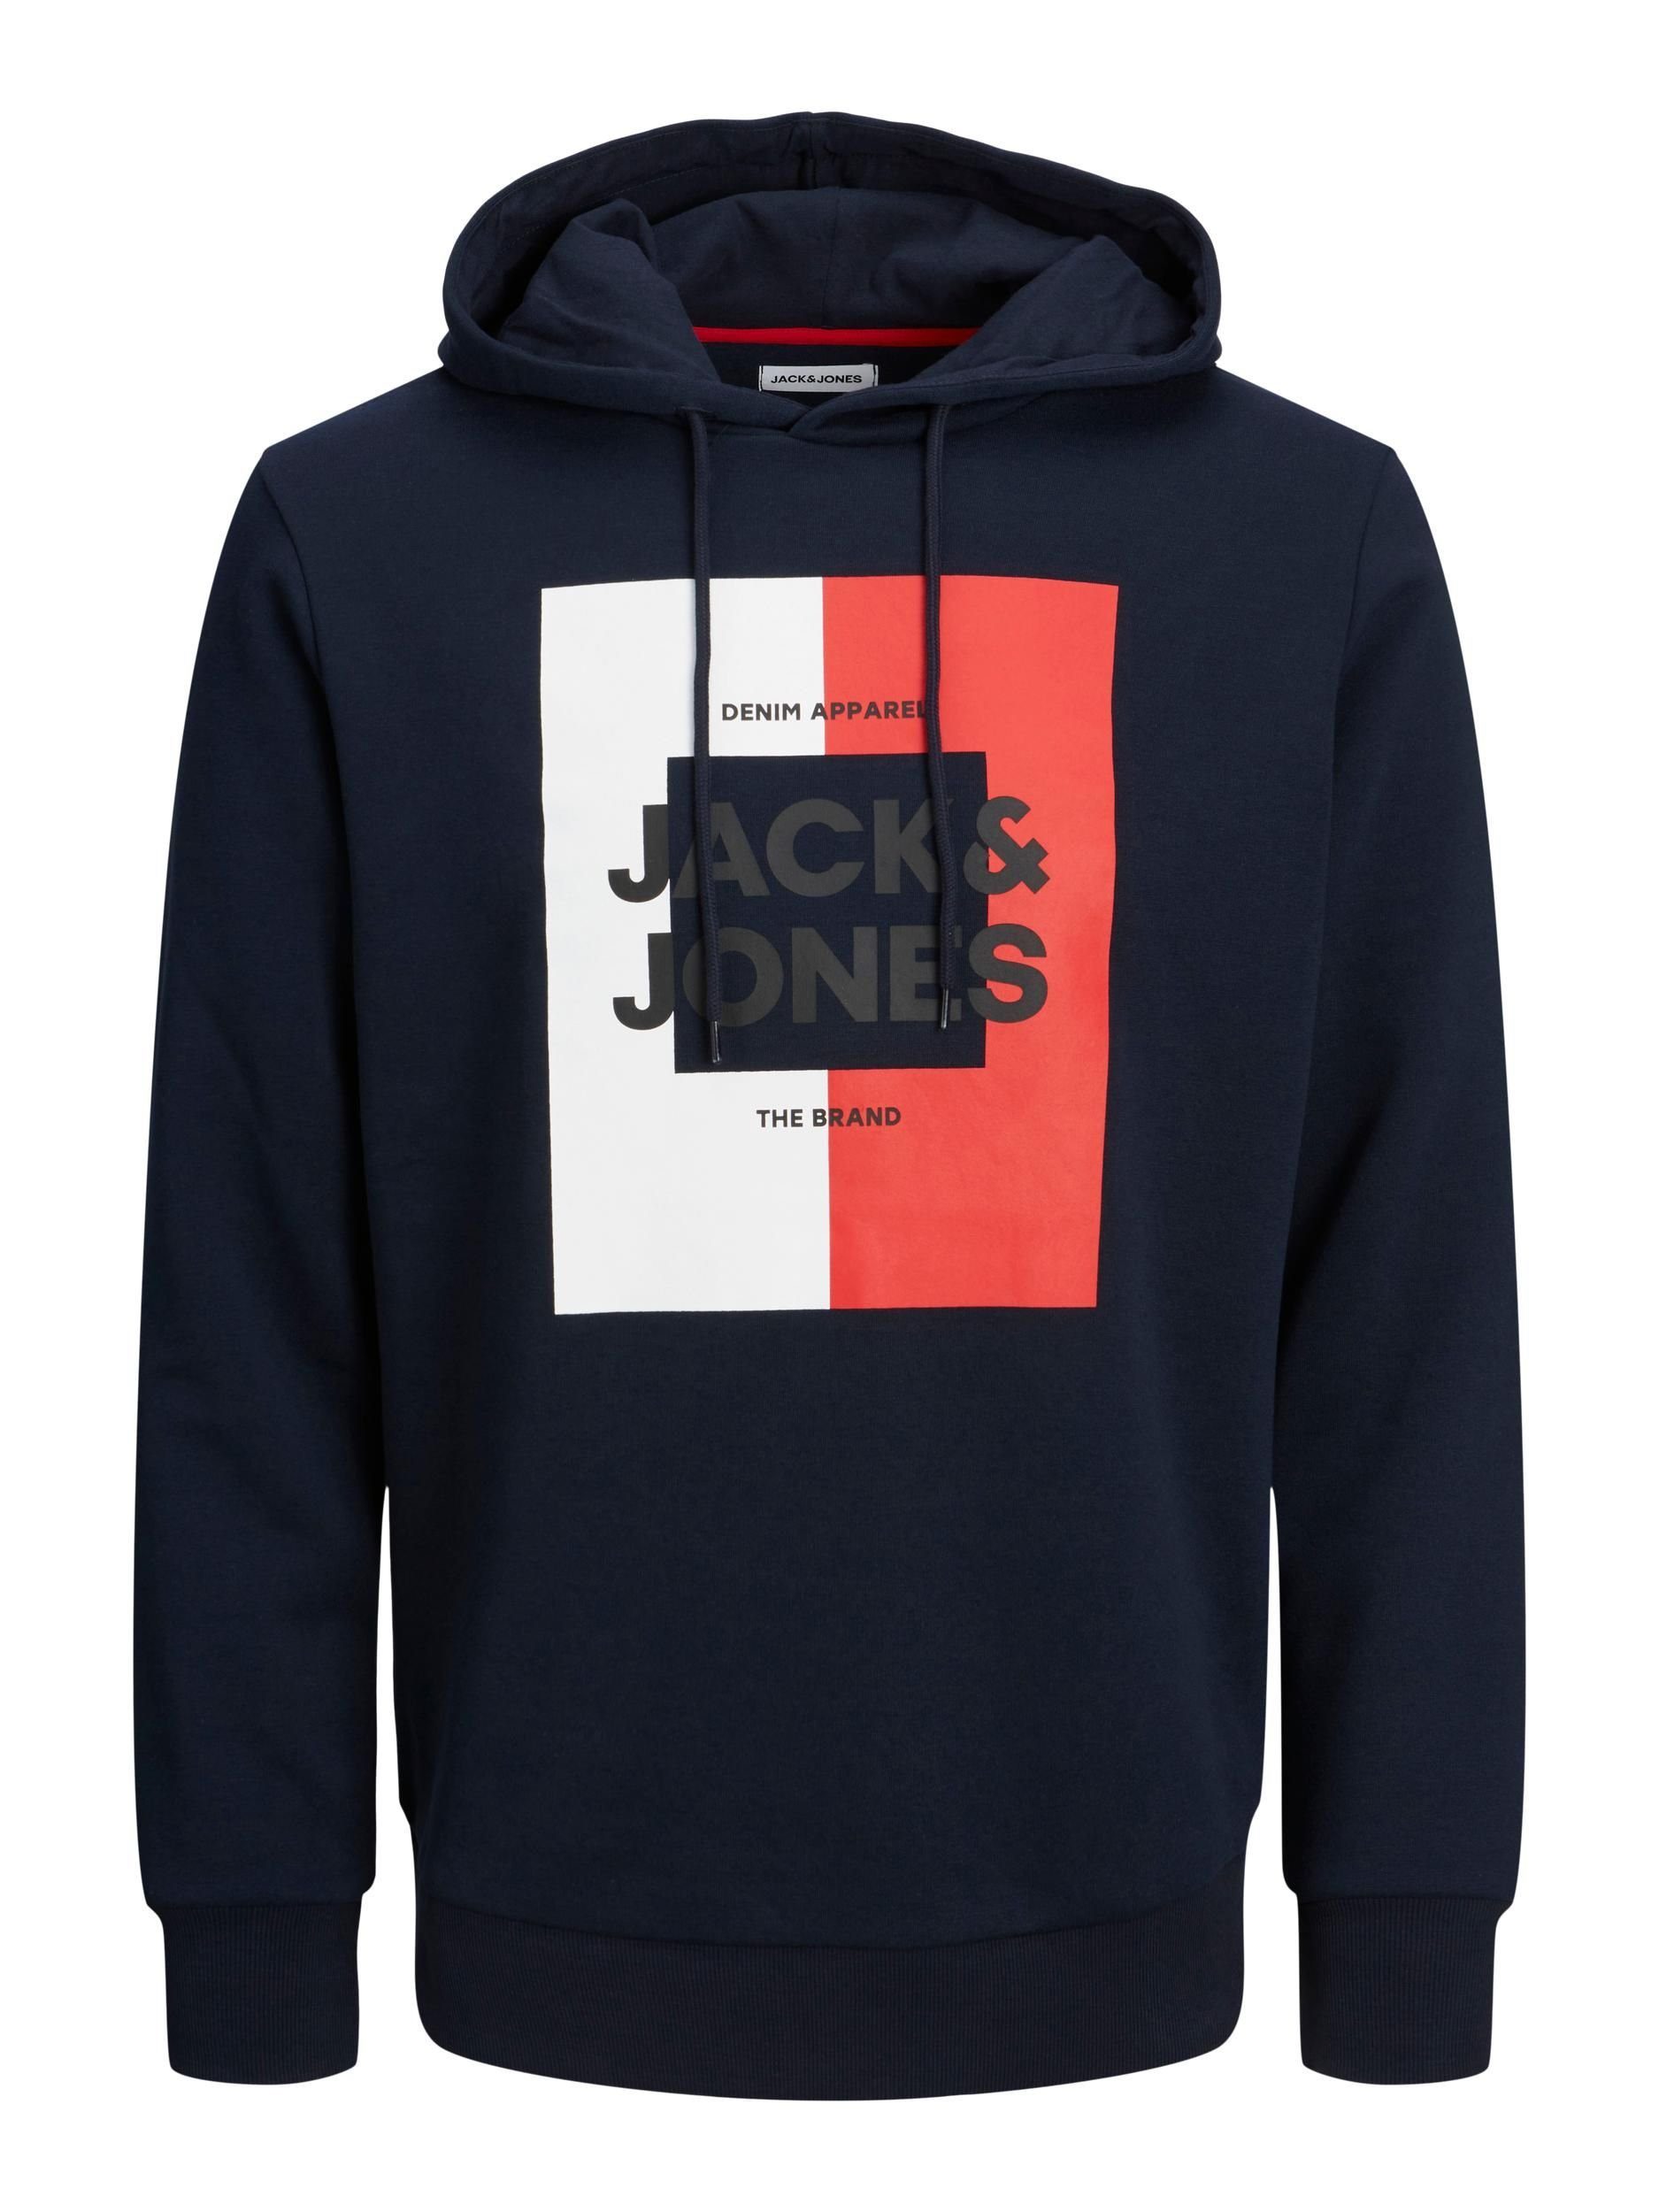 Sweatshirt & Jack Jones